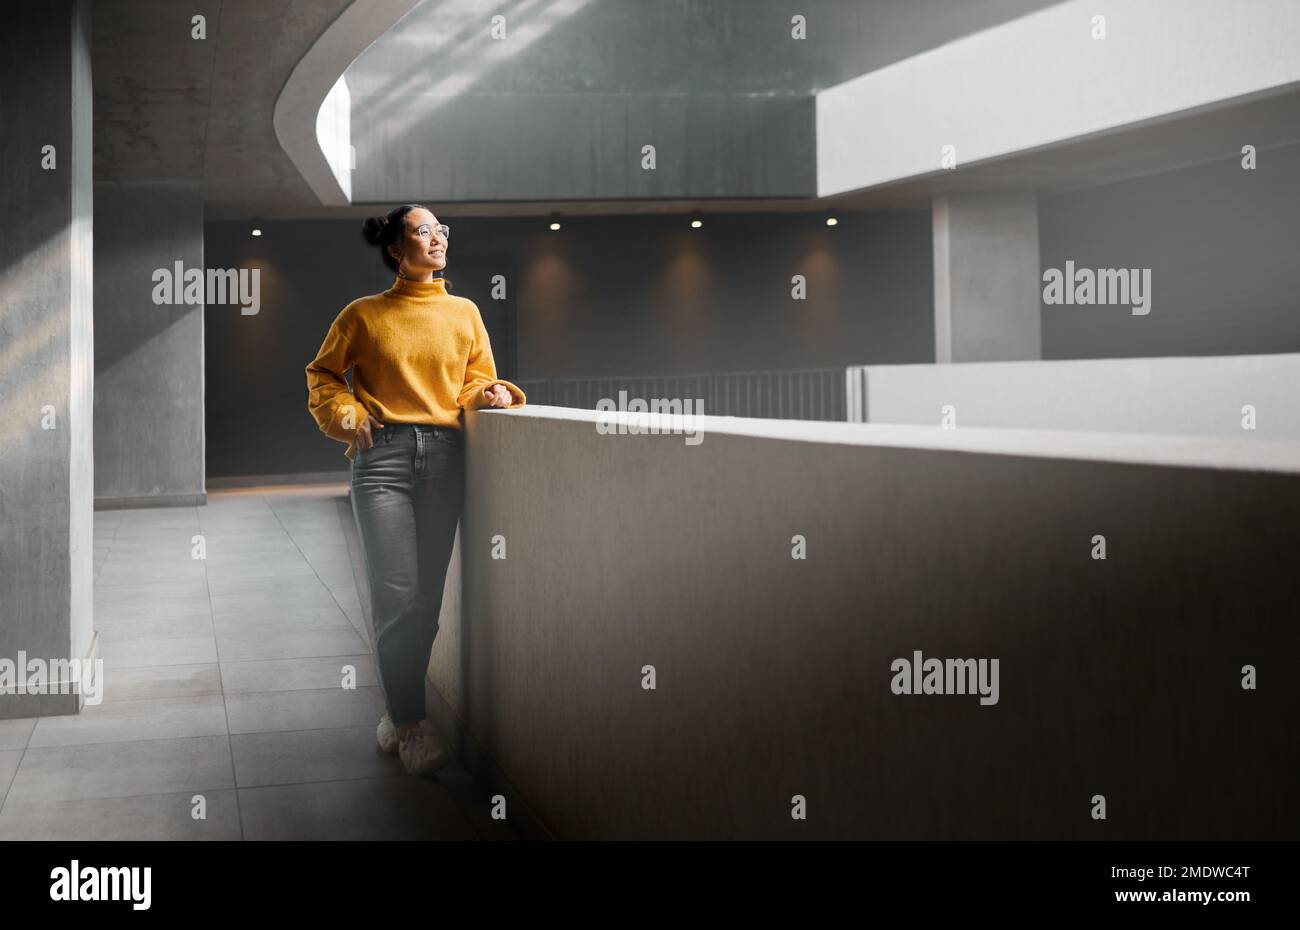 Penser, mockup et appartement avec une femme asiatique debout dans un couloir seul attendant l'inspiration. Idée, maquette et corps complet avec un attrayant Banque D'Images